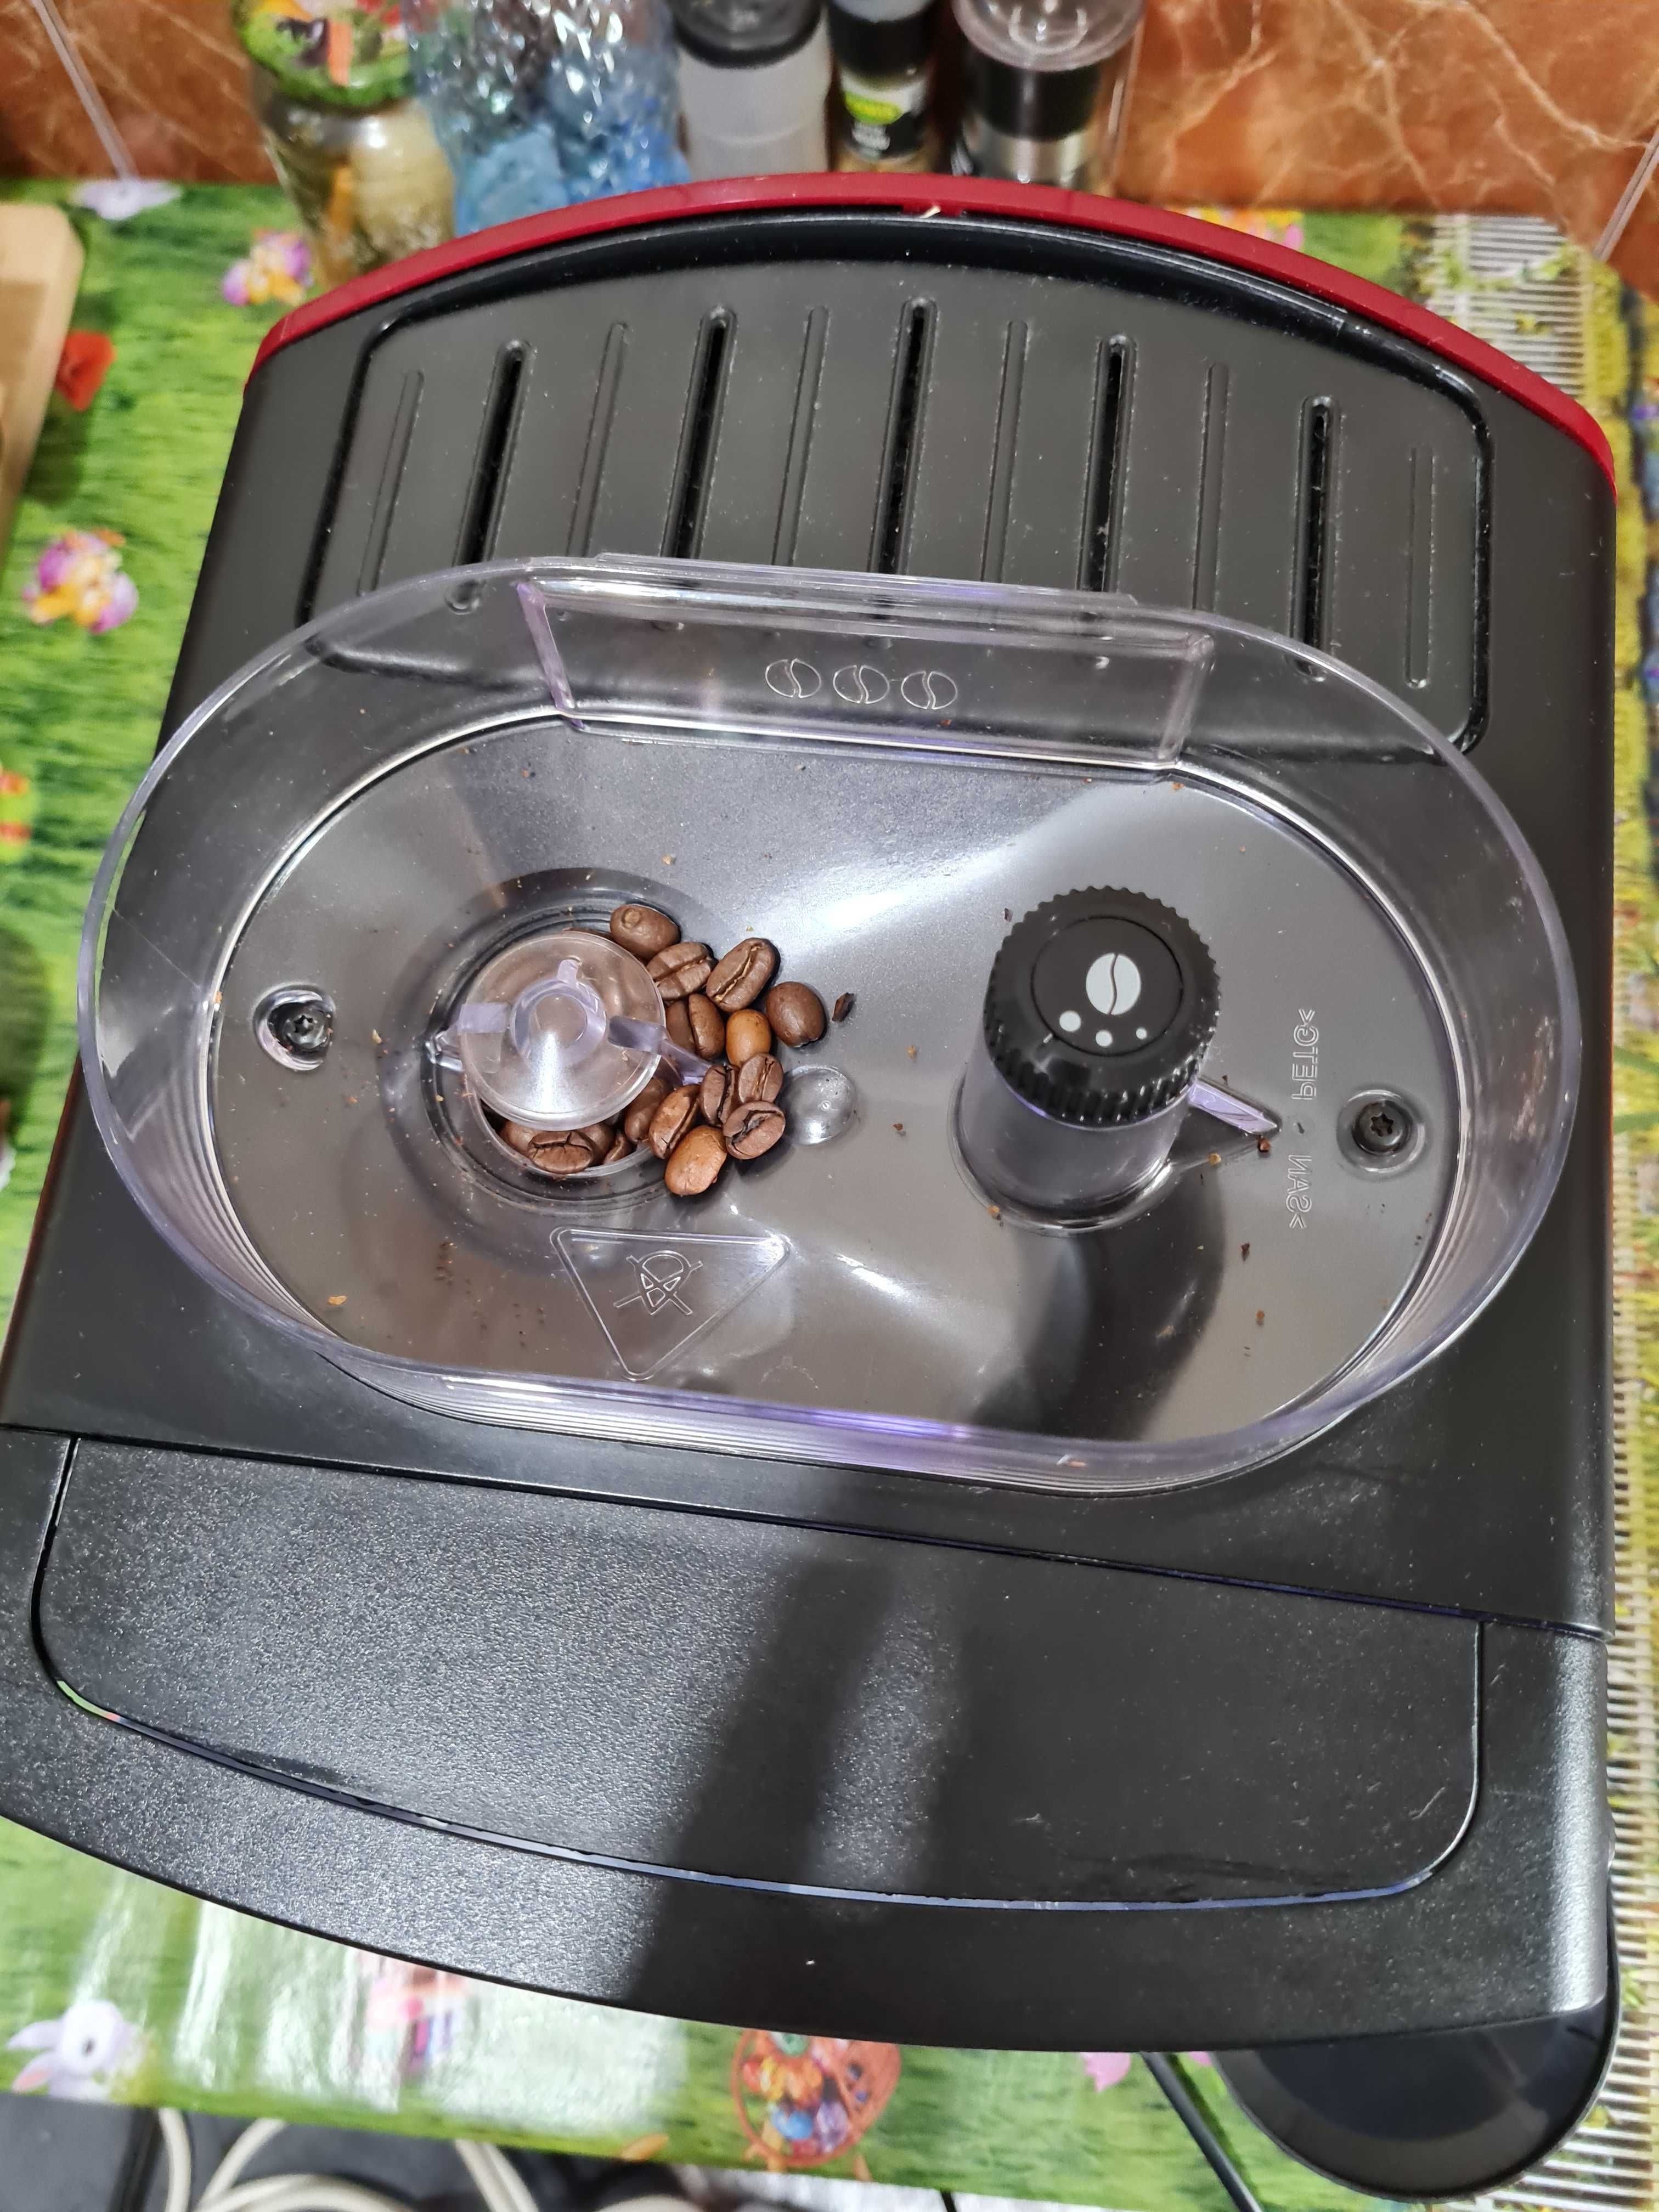 Krups expressor automat de cafea cu rasnita de cafea